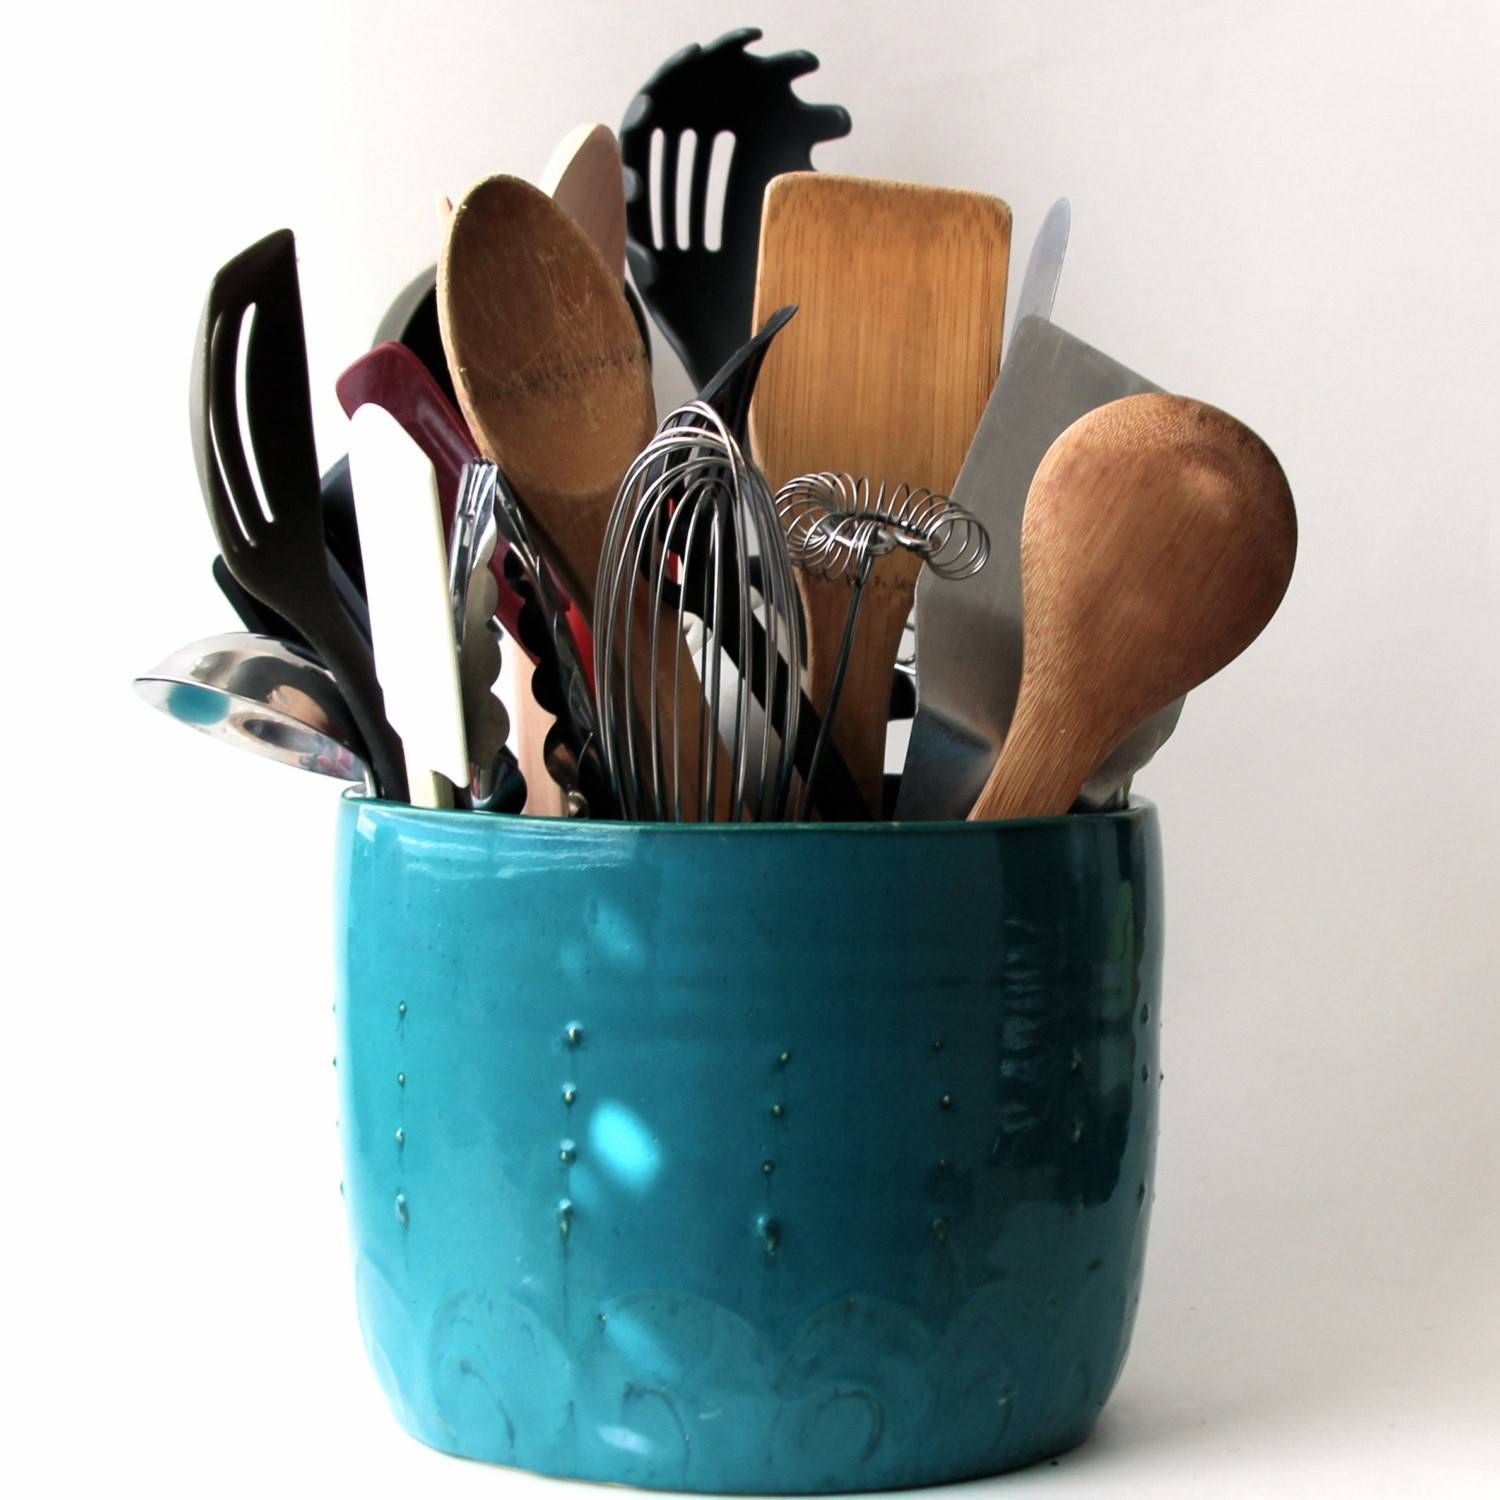 utensils holder pottery pot handmade utensils holder pottery utensils holder cultery dryer Ceramic utensils holder green kitchenware